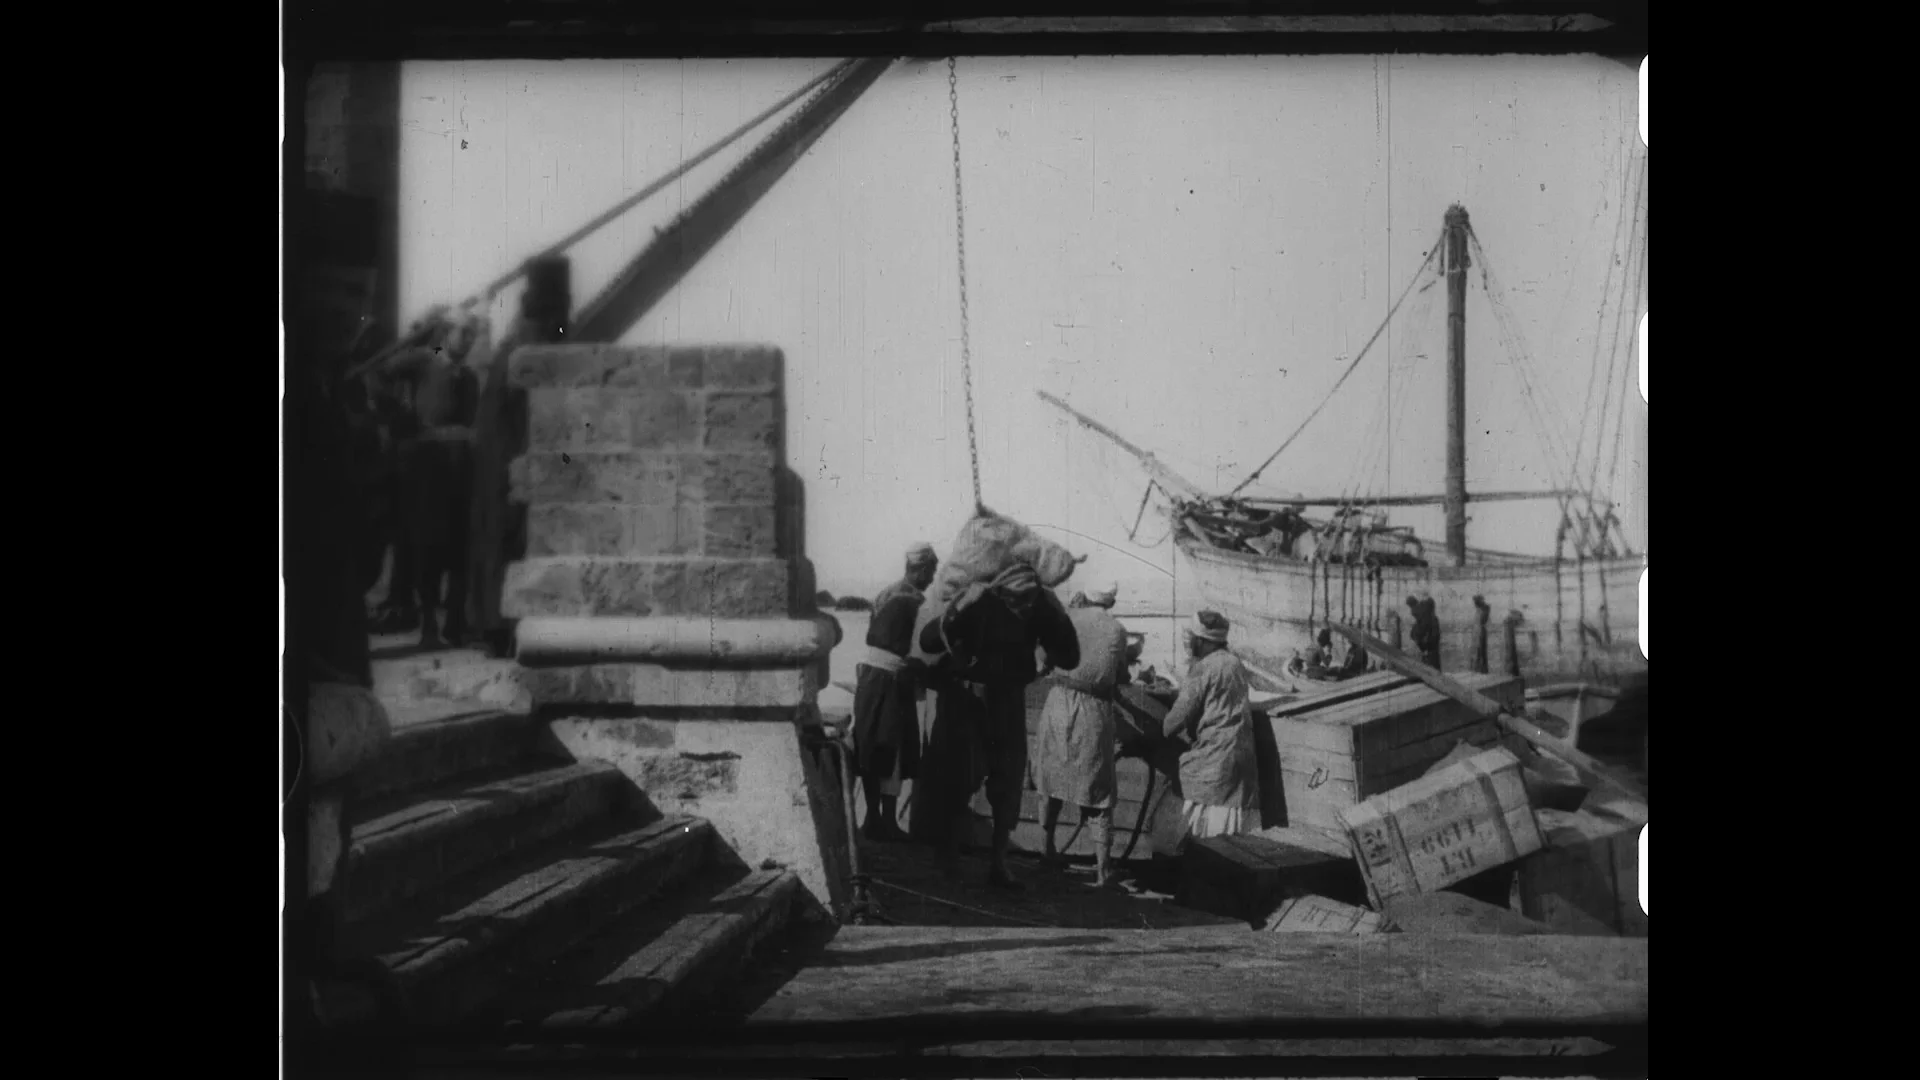 מתוך הסרט יפו, בית לחם, וירושלים בשנת 1896